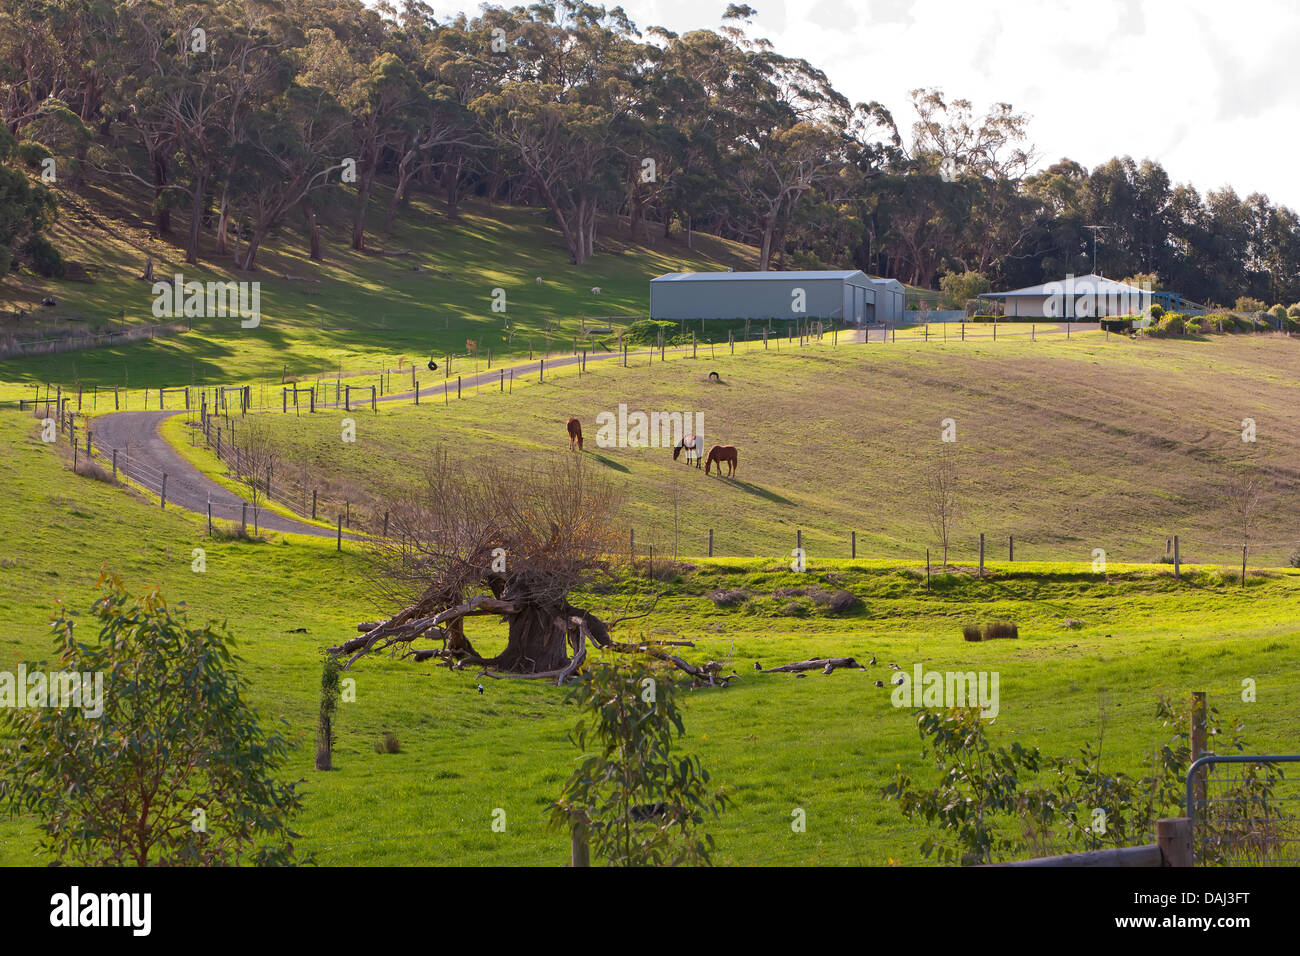 Bäume ländlich geprägtes Land Pferde Schuppen Haus Bauernhof Straße Auffahrt Landwirtschaft Landwirtschaft landwirtschaftliche Fleurieu Peninsula South Australia Stockfoto